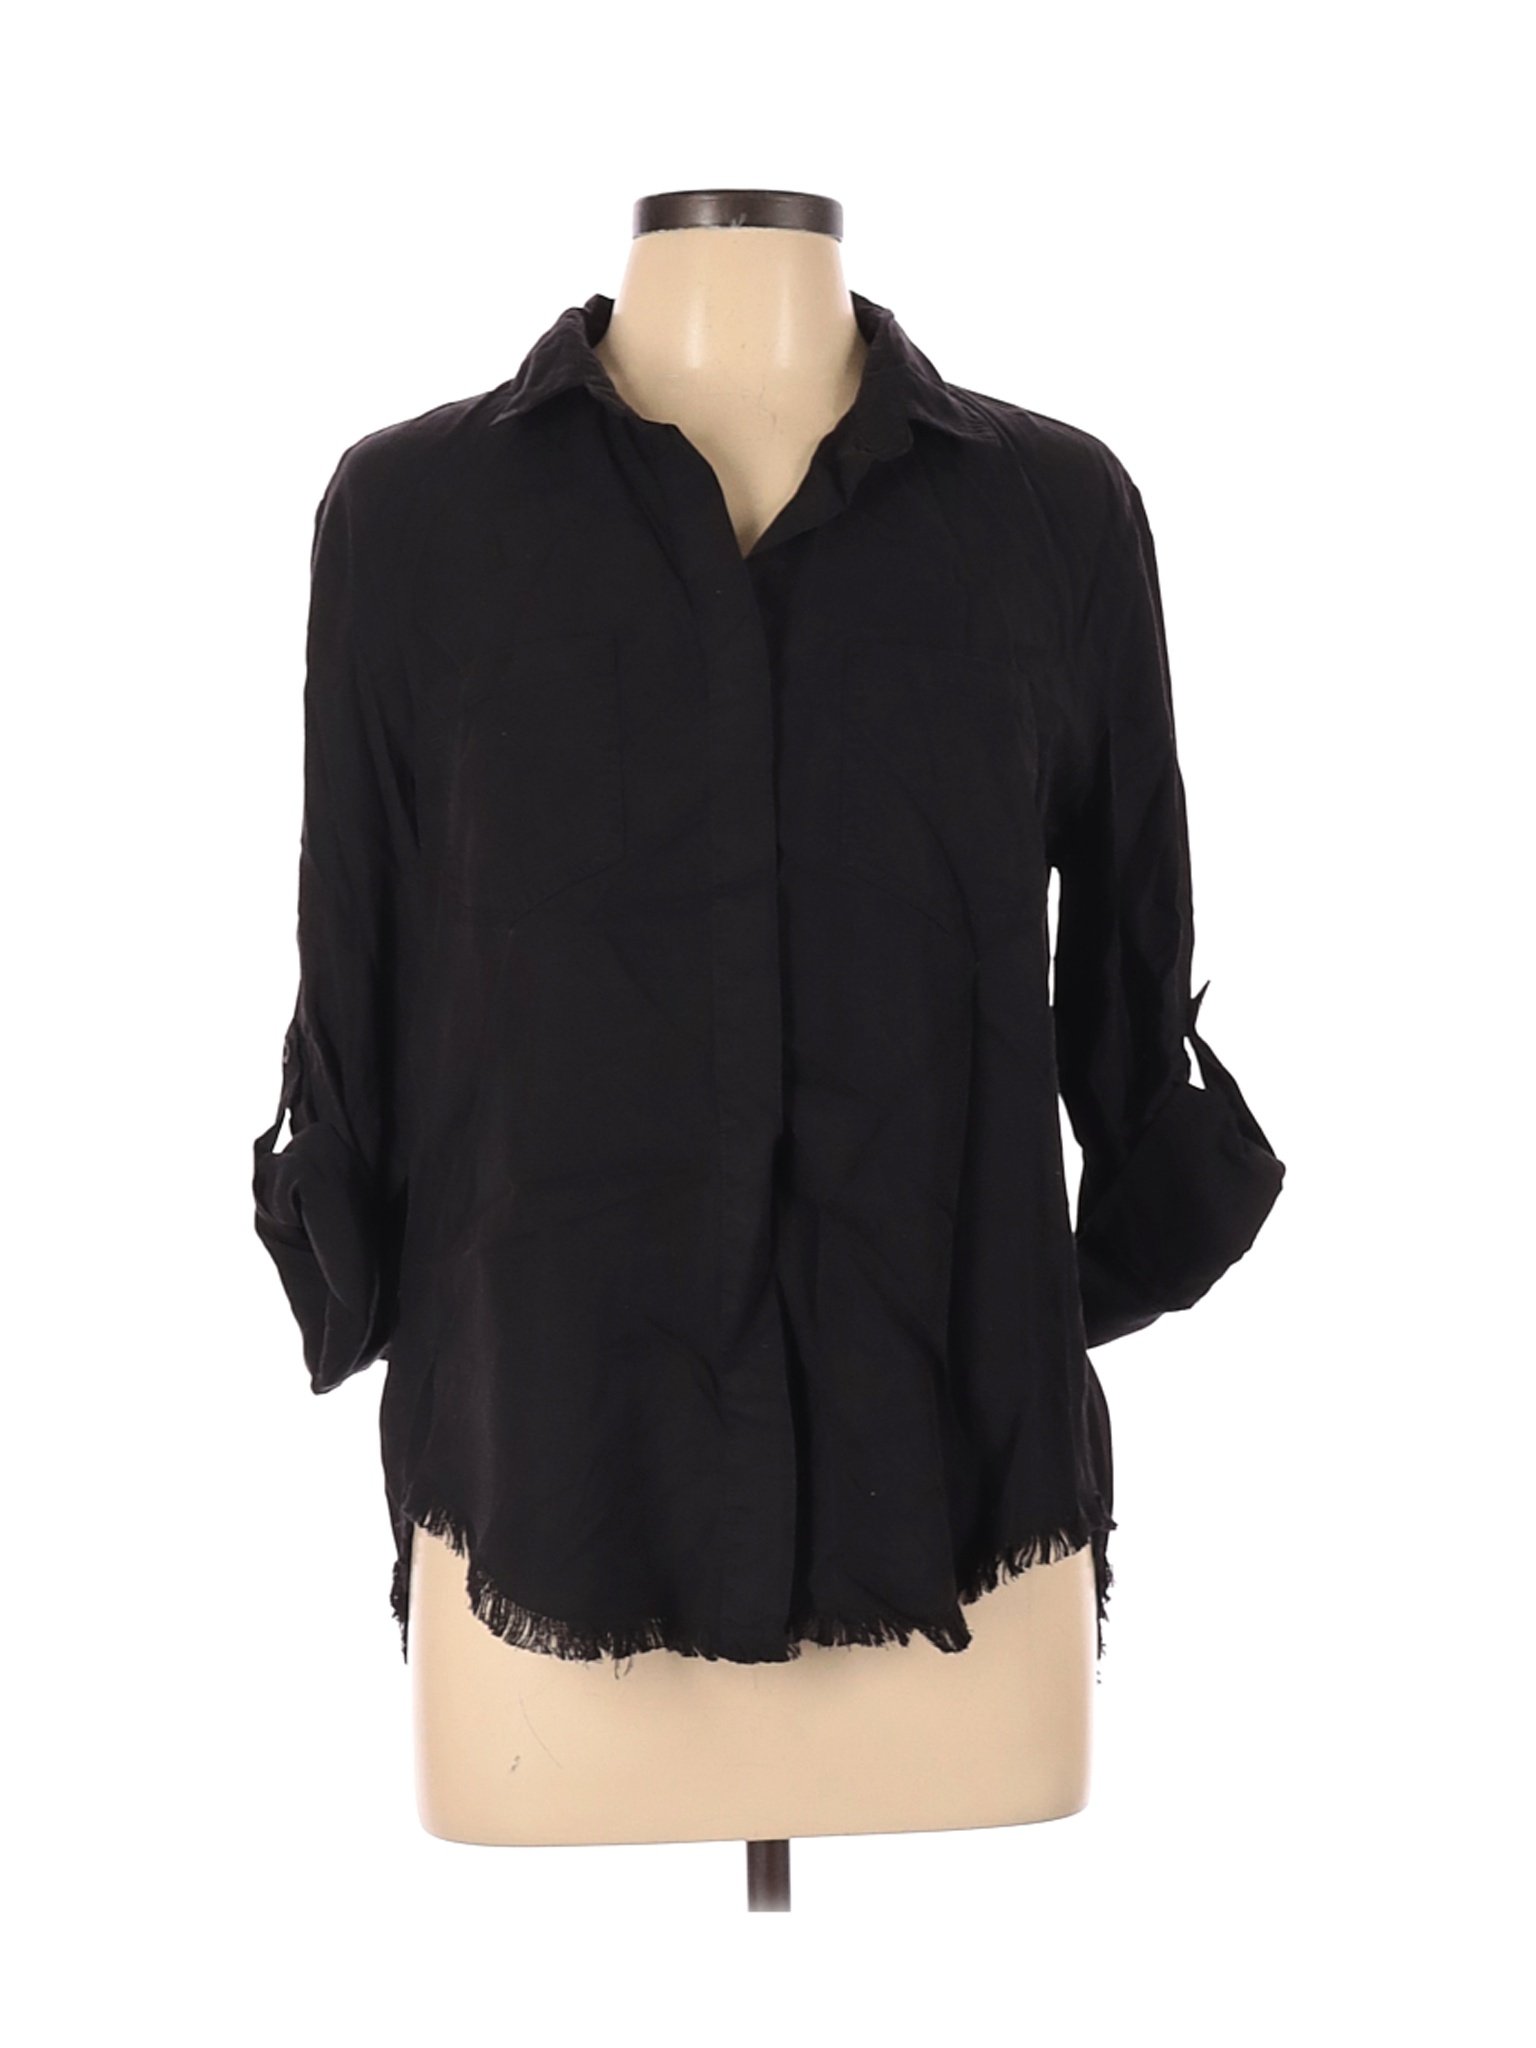 Velvet Heart Women Black Long Sleeve Button-Down Shirt L | eBay